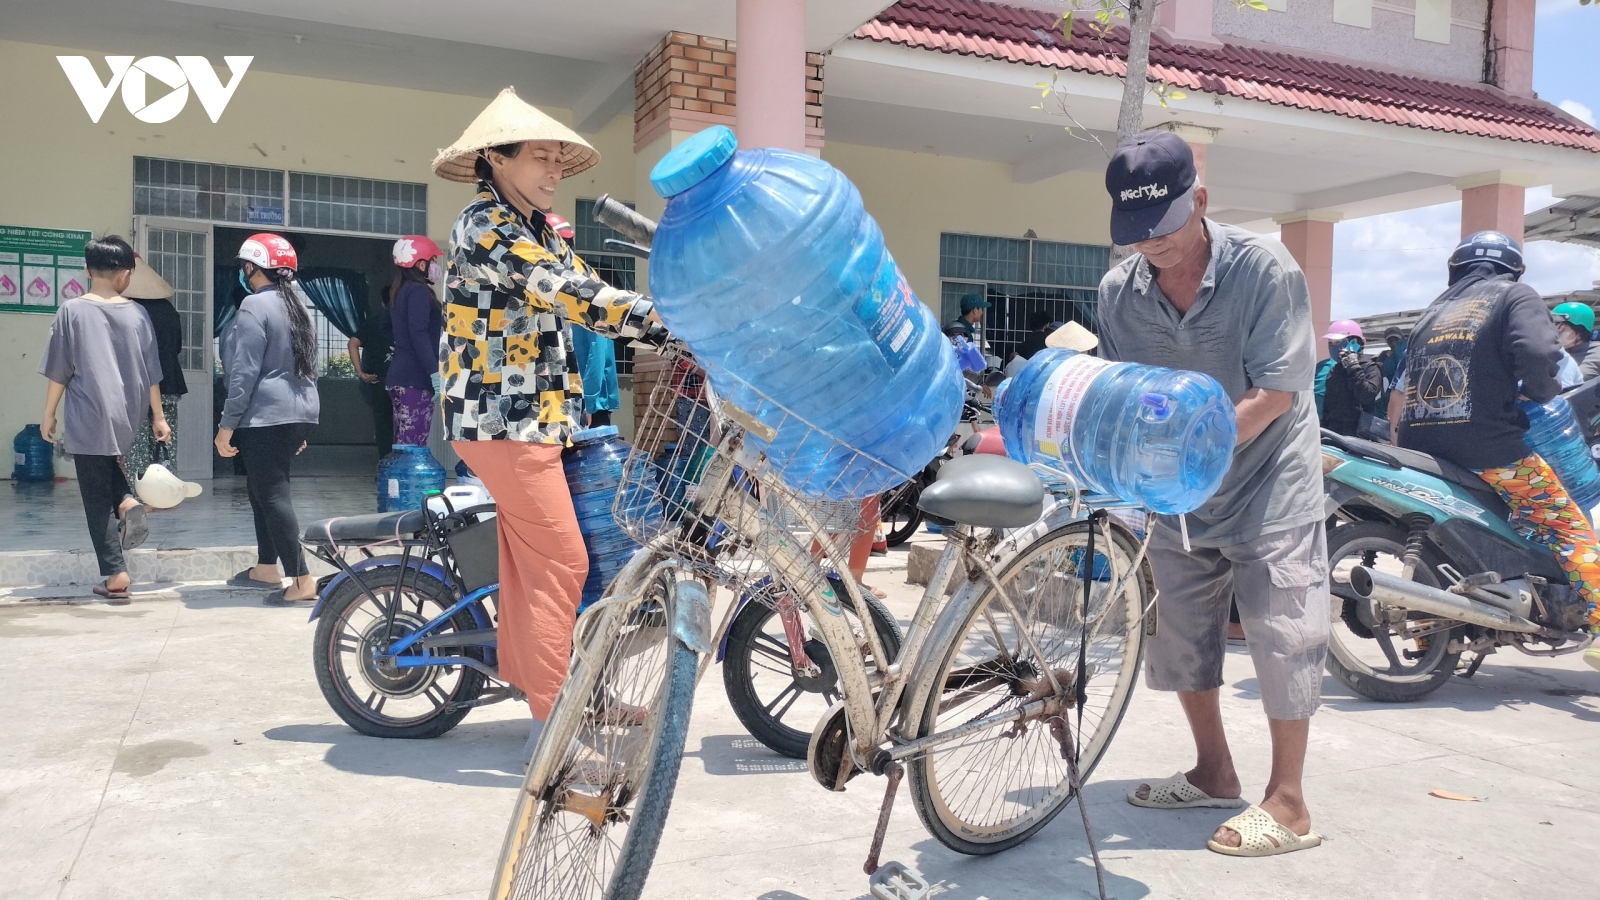 Chung sức giải cơn khát mùa khô ở Cà Mau